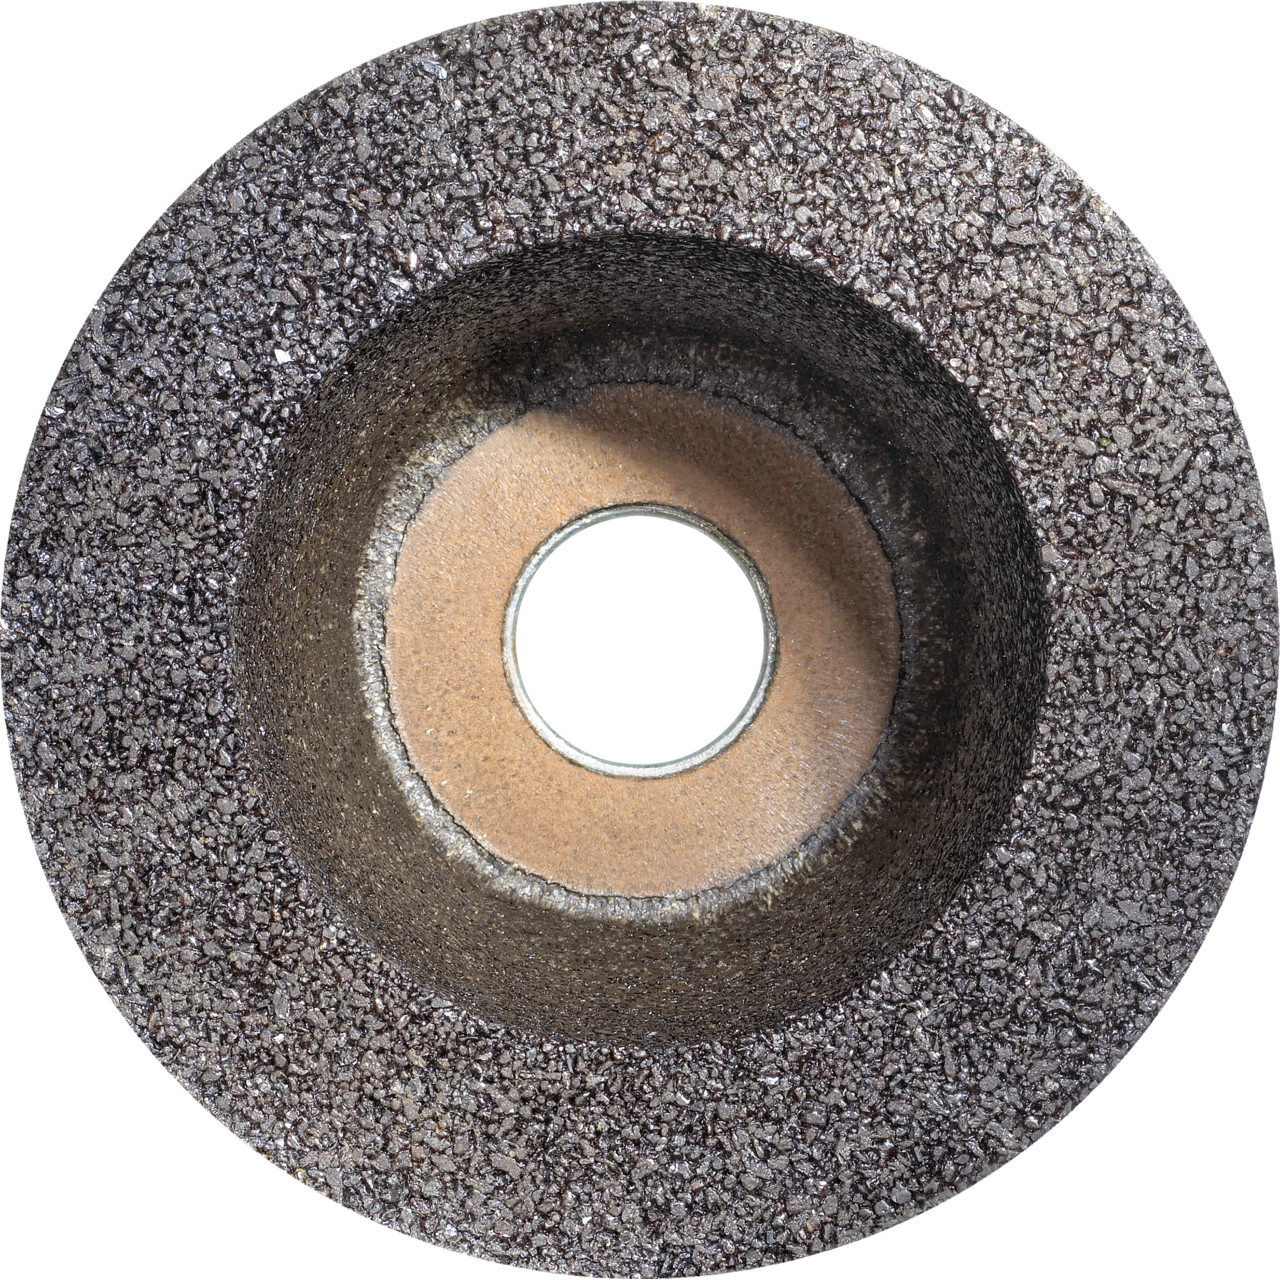 Tazza in resina sintetica Tyrolit D/JxDxH 110/90x55x22.2 Per pietra, forma: ruota a tazza 11BT, Art. 895670